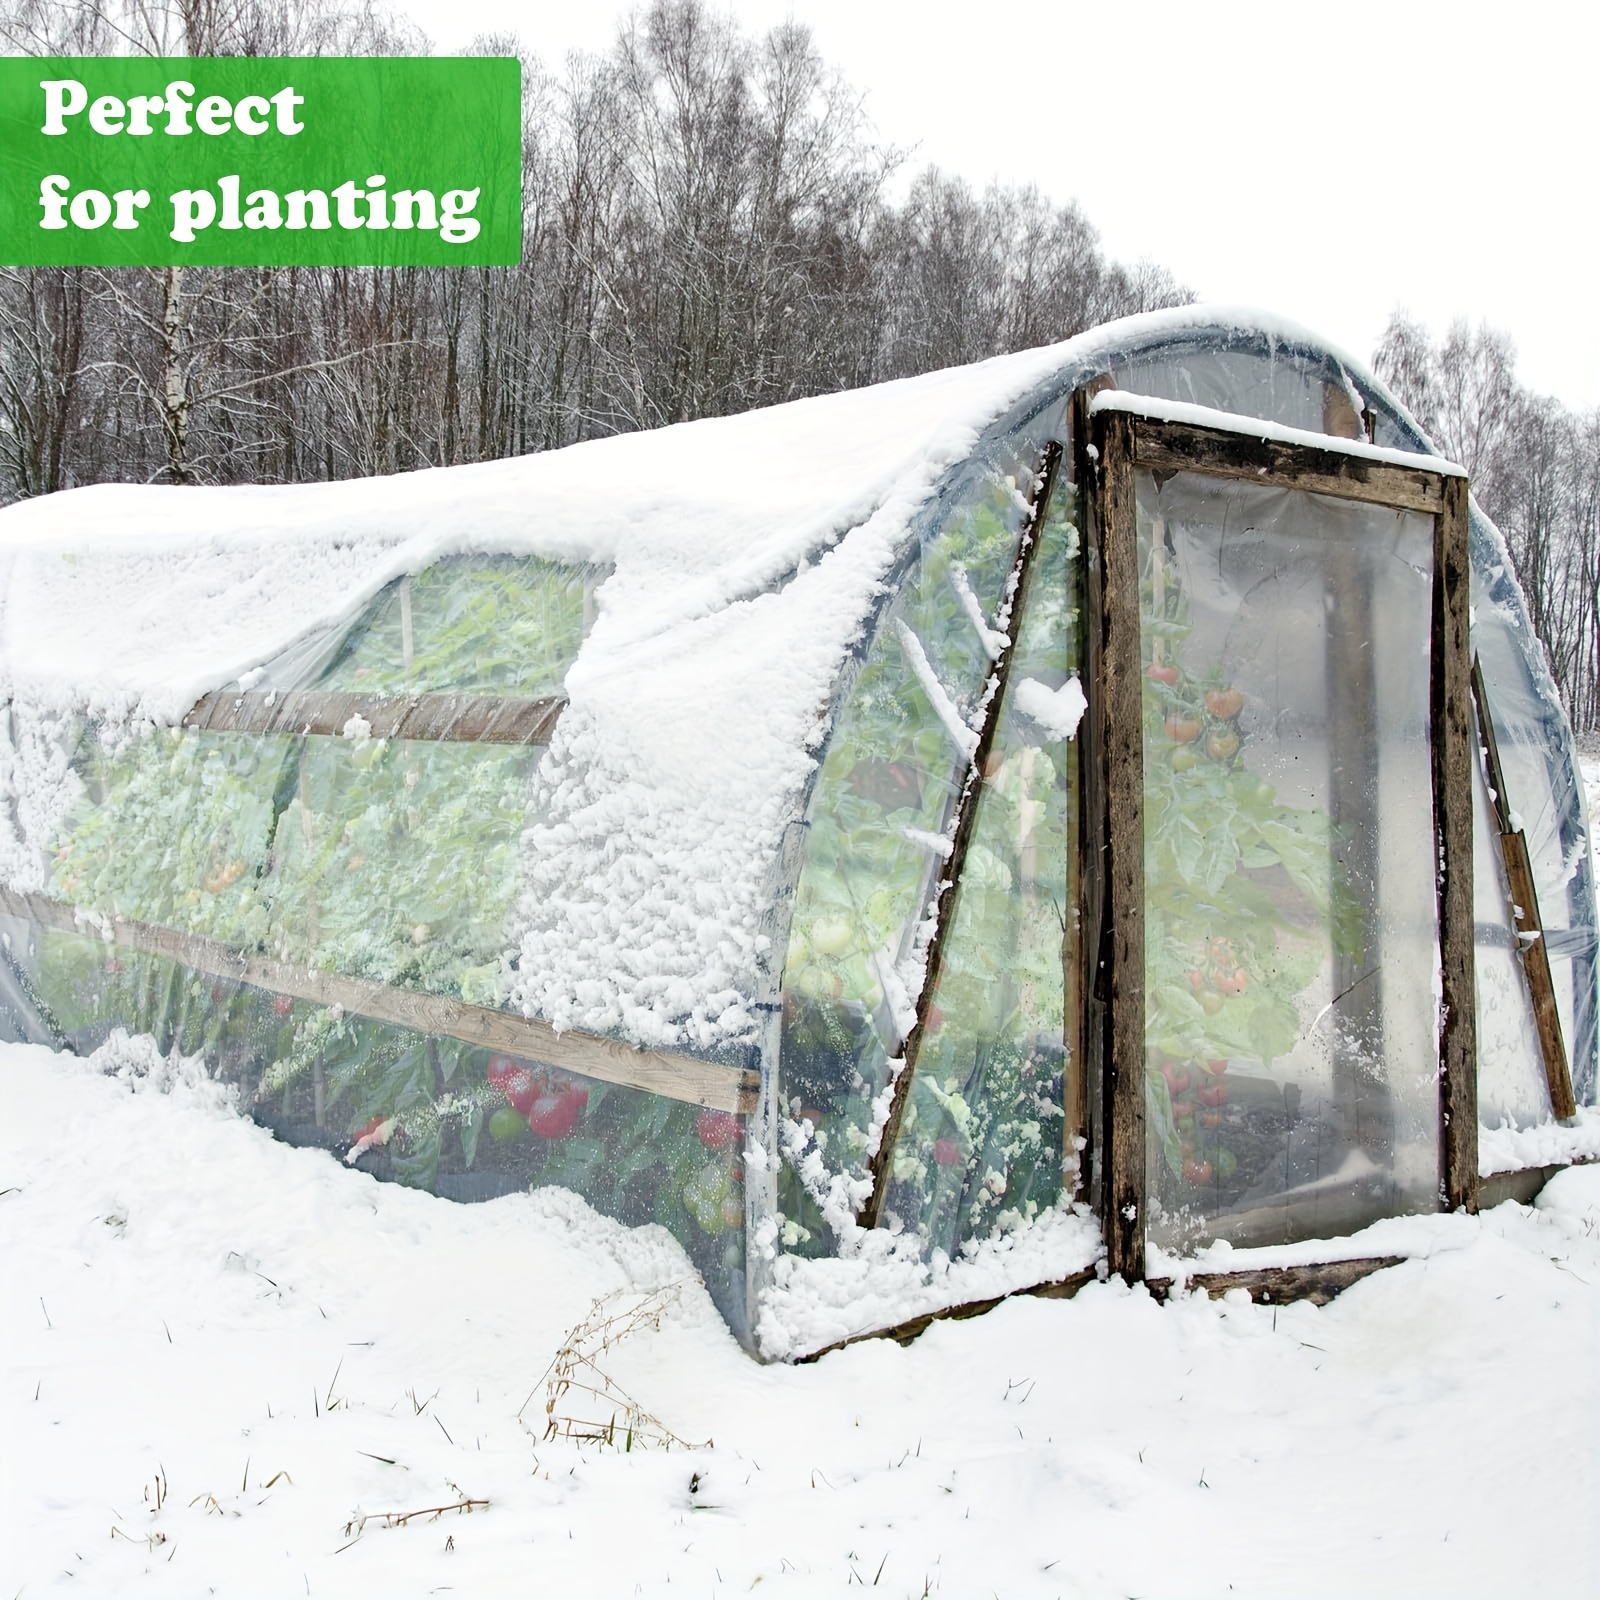  A&A Green Store - Película para Invernadero de plástico,  cubierta de polietileno transparente 6 mil de grosor, 4 años de resistencia  a los rayos UV : Patio, Césped y Jardín